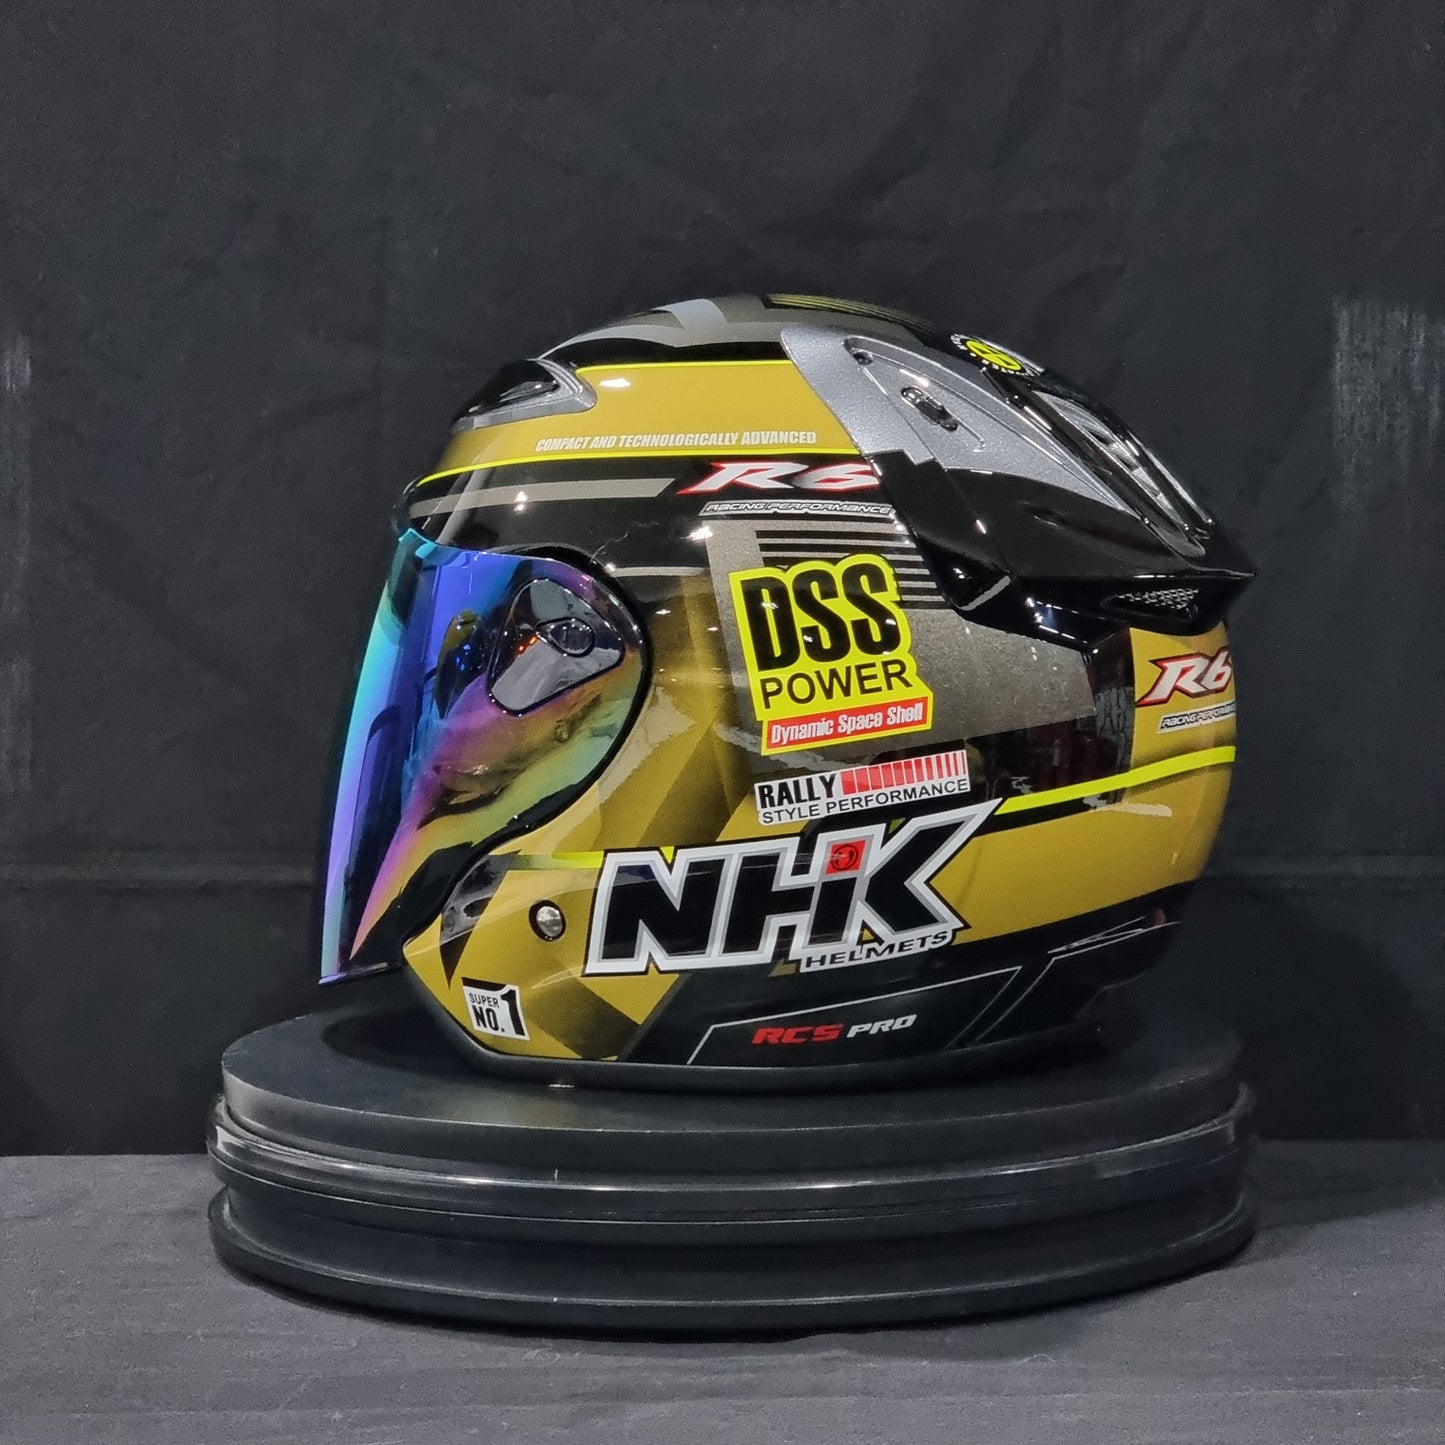 NHK Helmet R6 v2 Rally (Black/Gold Glossy)